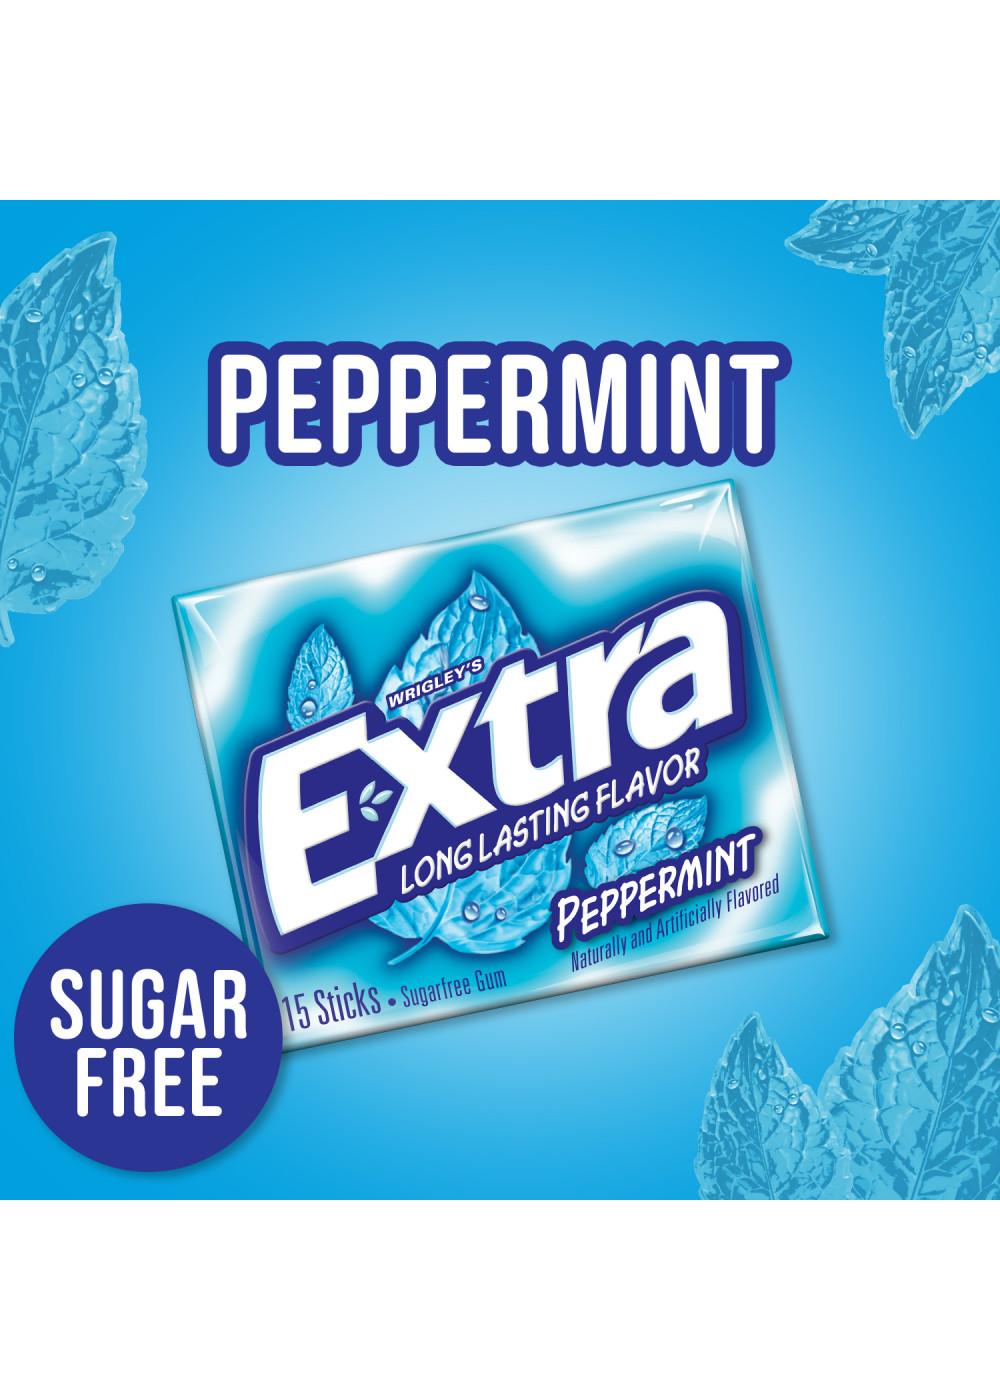 Eclipse Peppermint Sugarfree Gum Multipack - Shop Gum & Mints at H-E-B